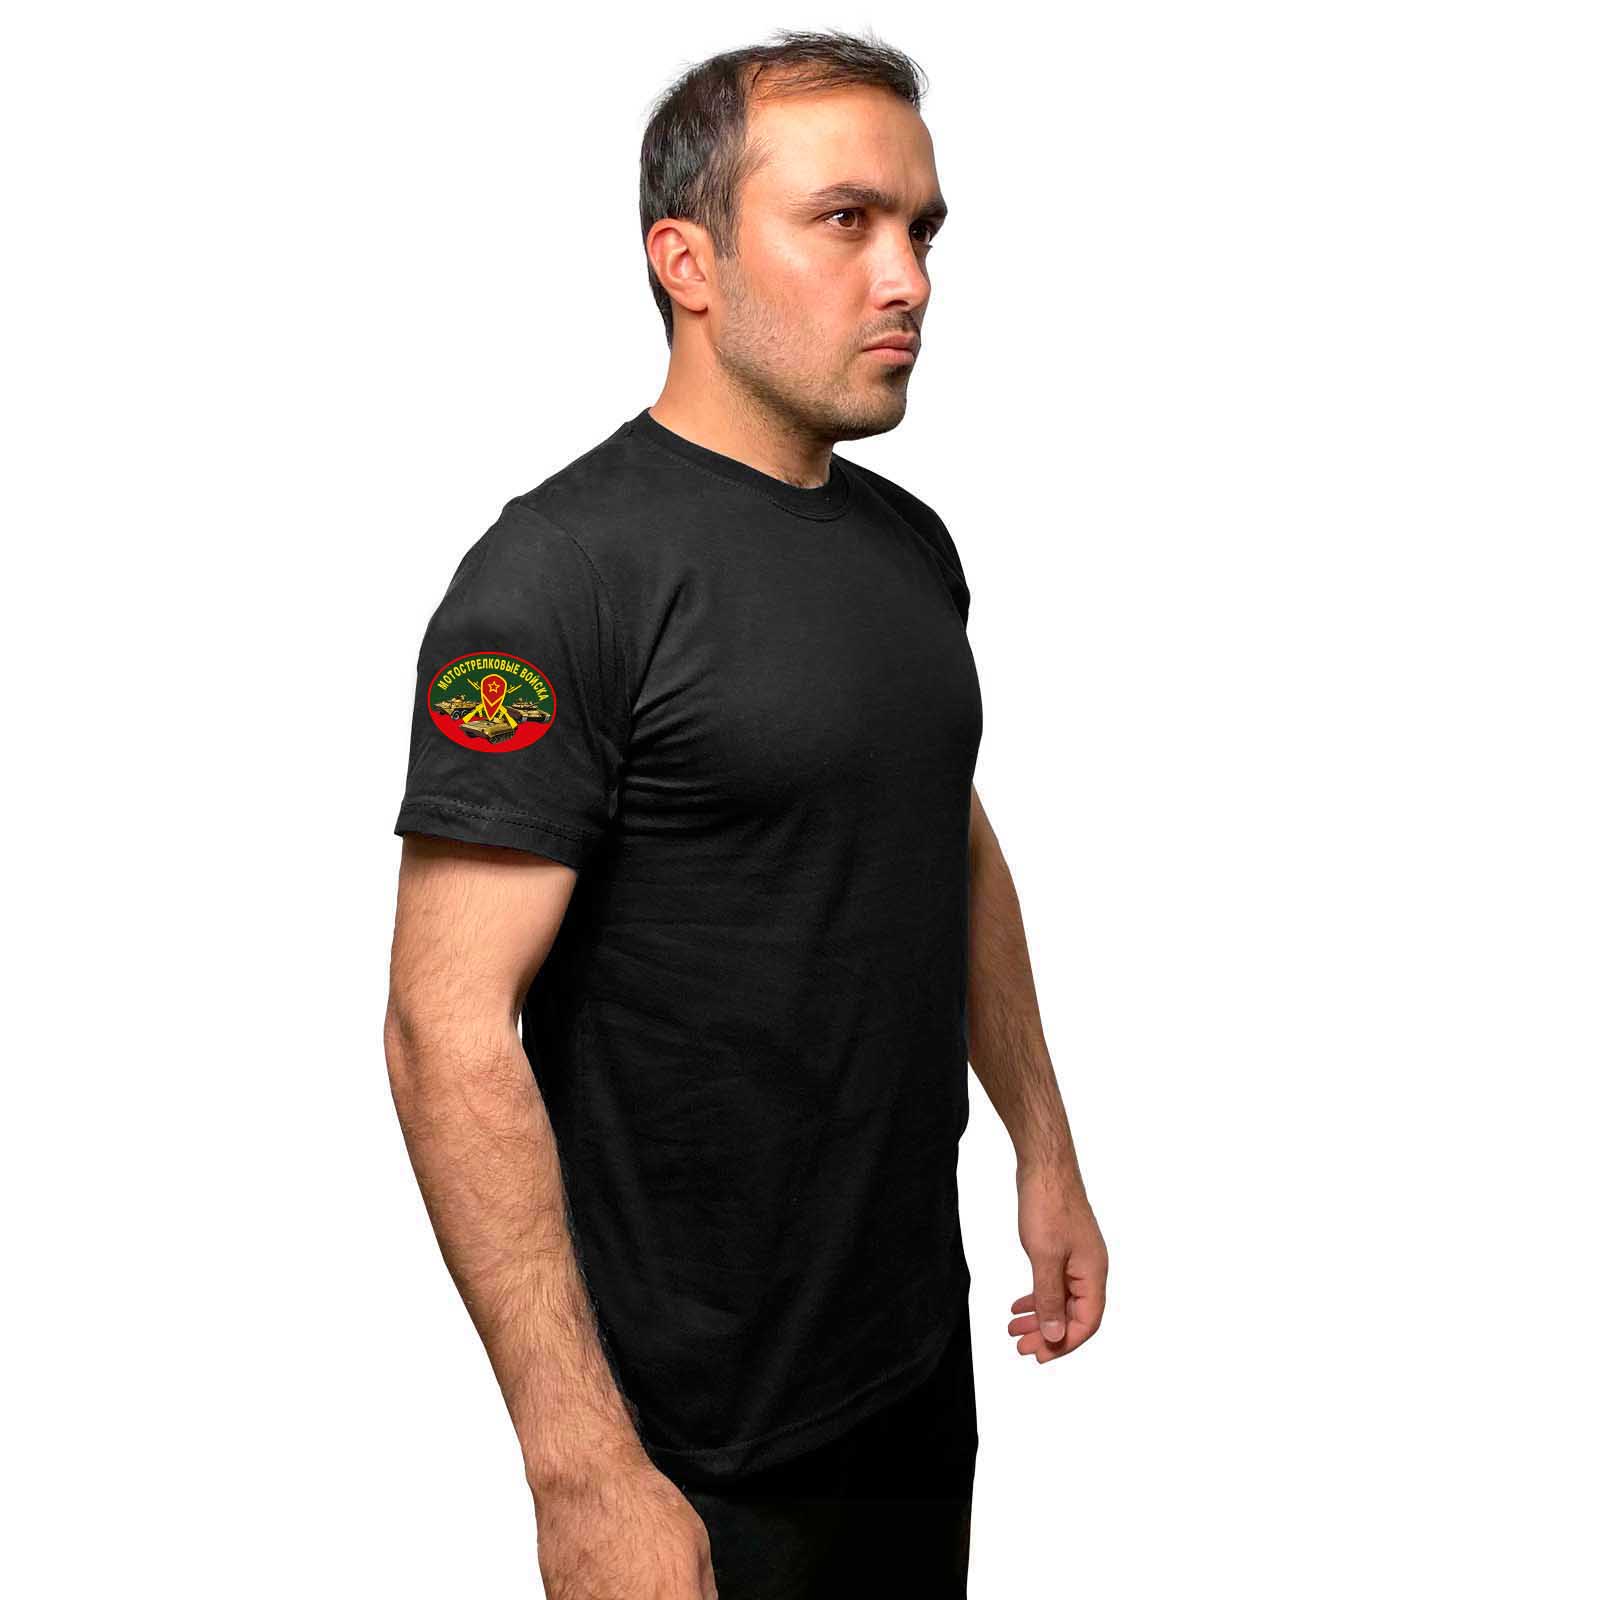 Купить стильную черную футболку с термотрансфером Мотострелковые Войска выгодно